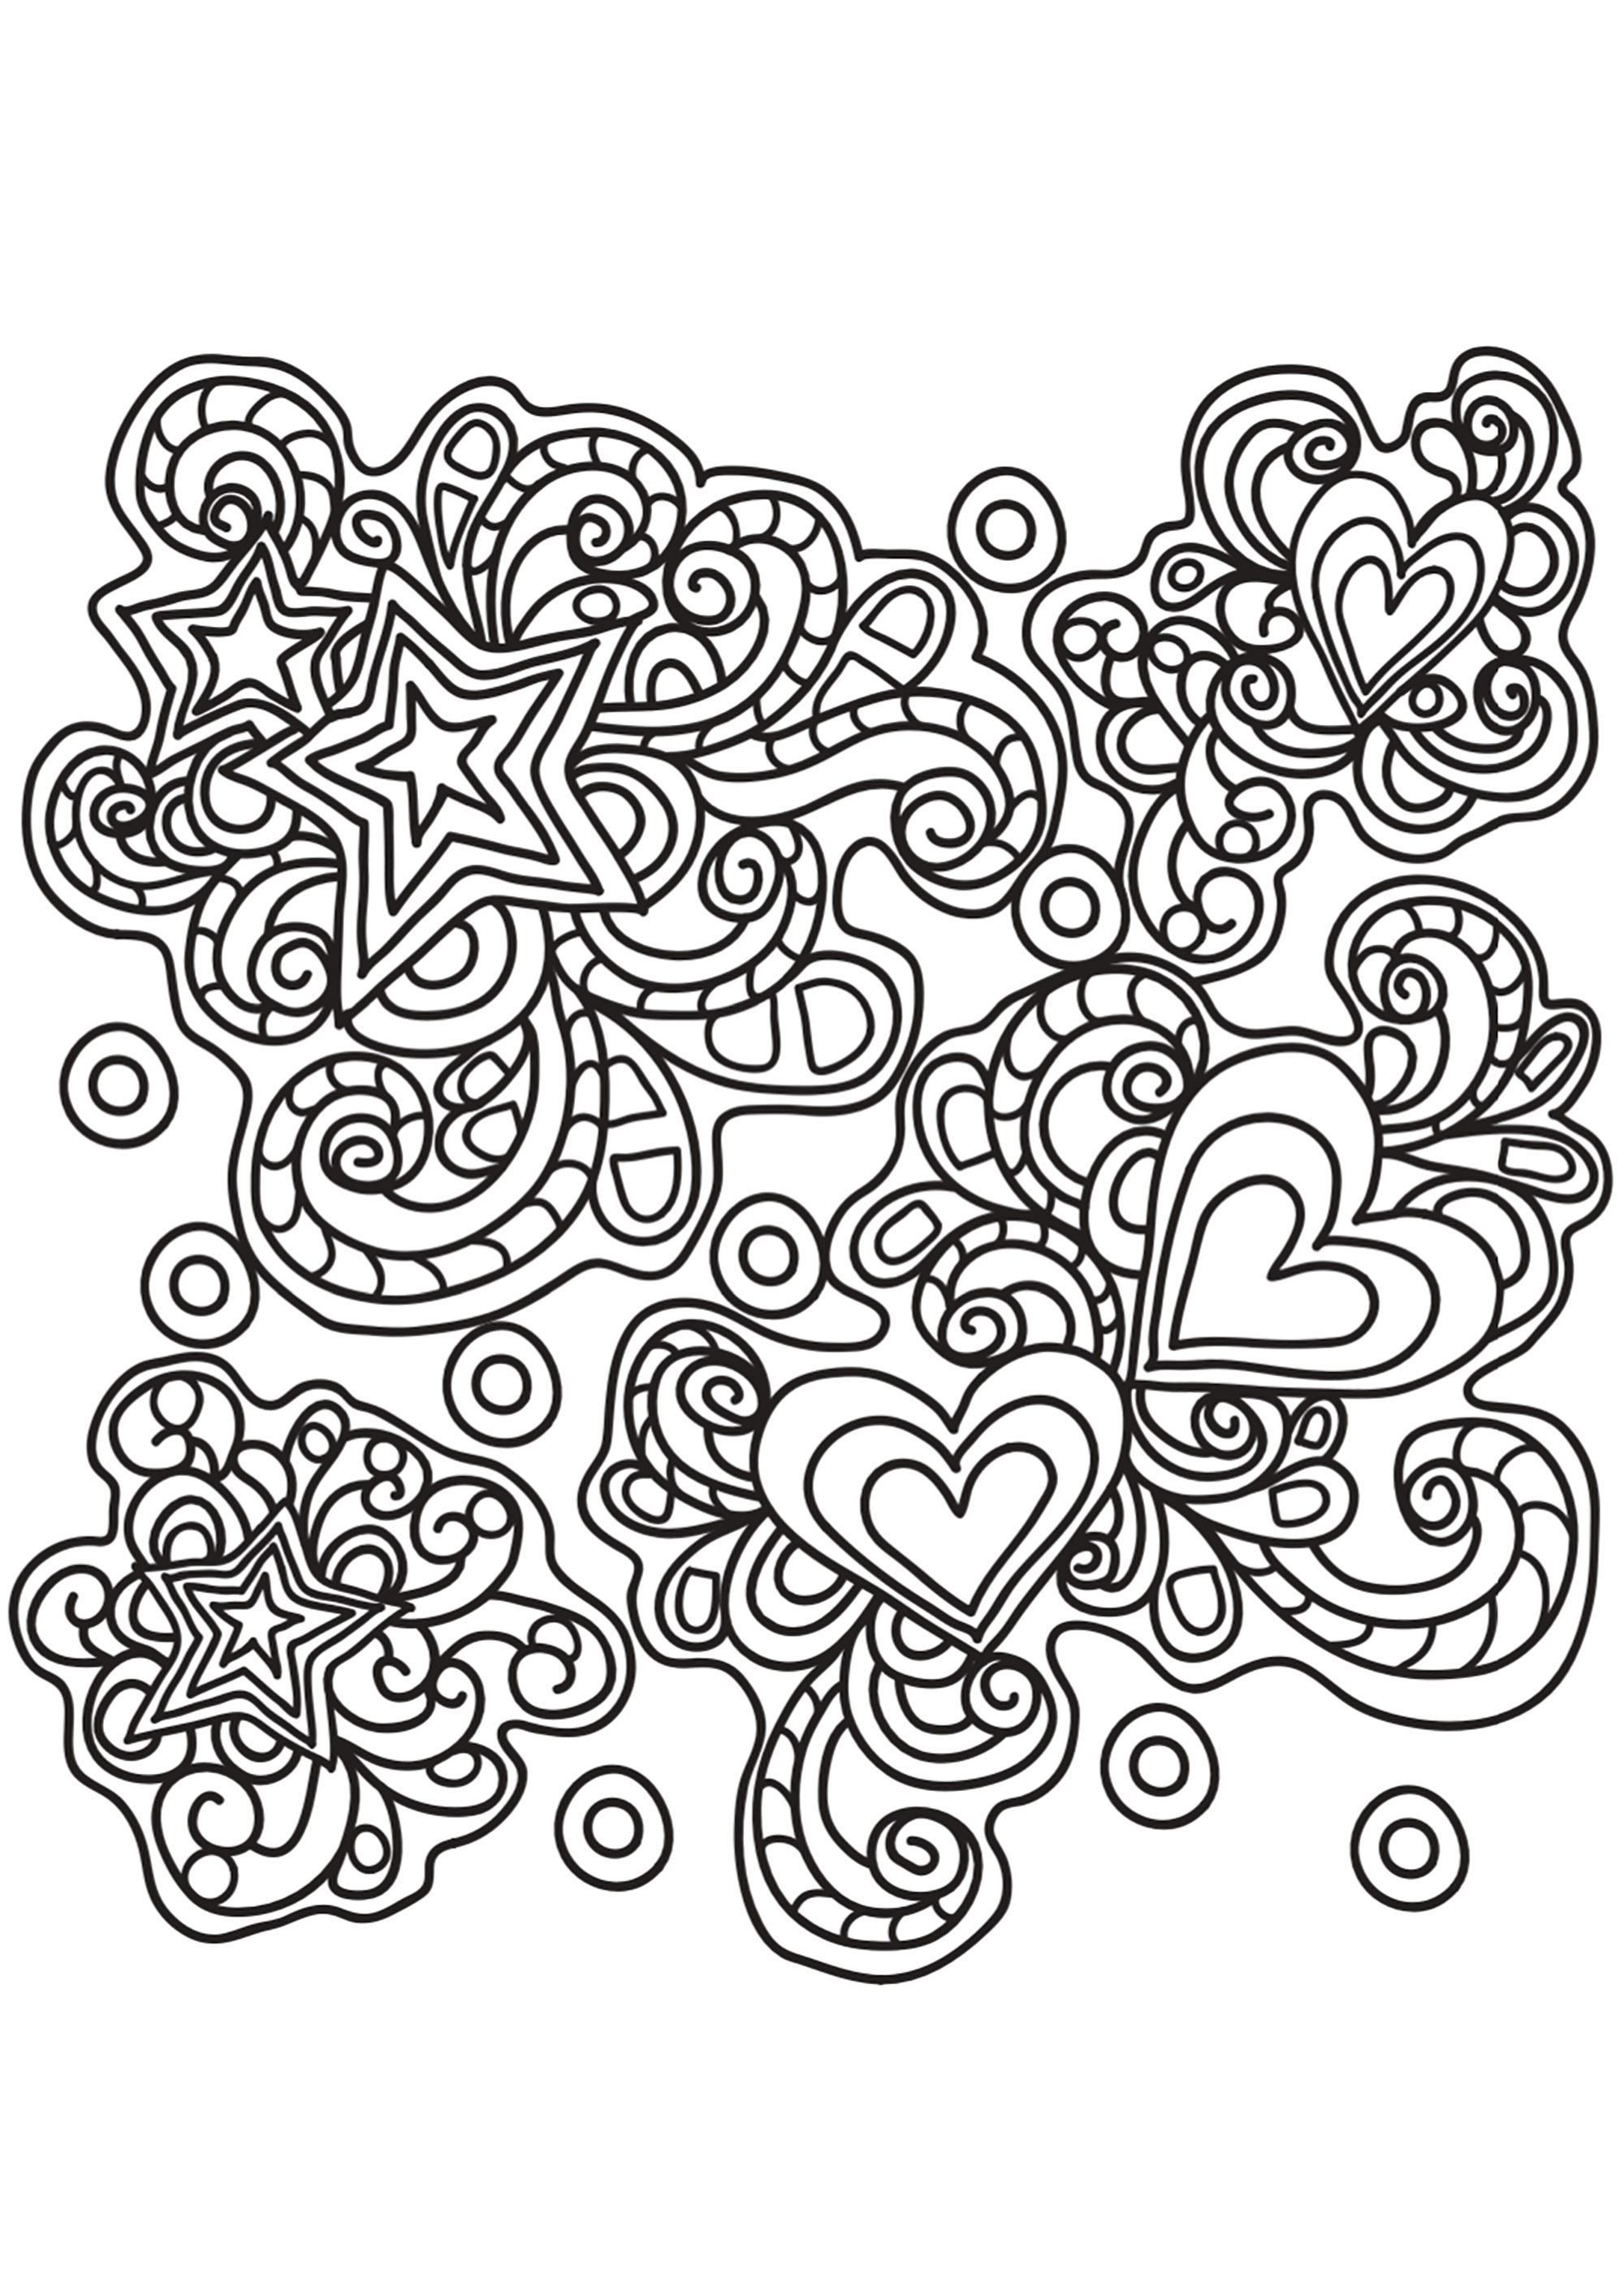 Joli Doodle représentant des coeurs et des étoiles enchevêtrées